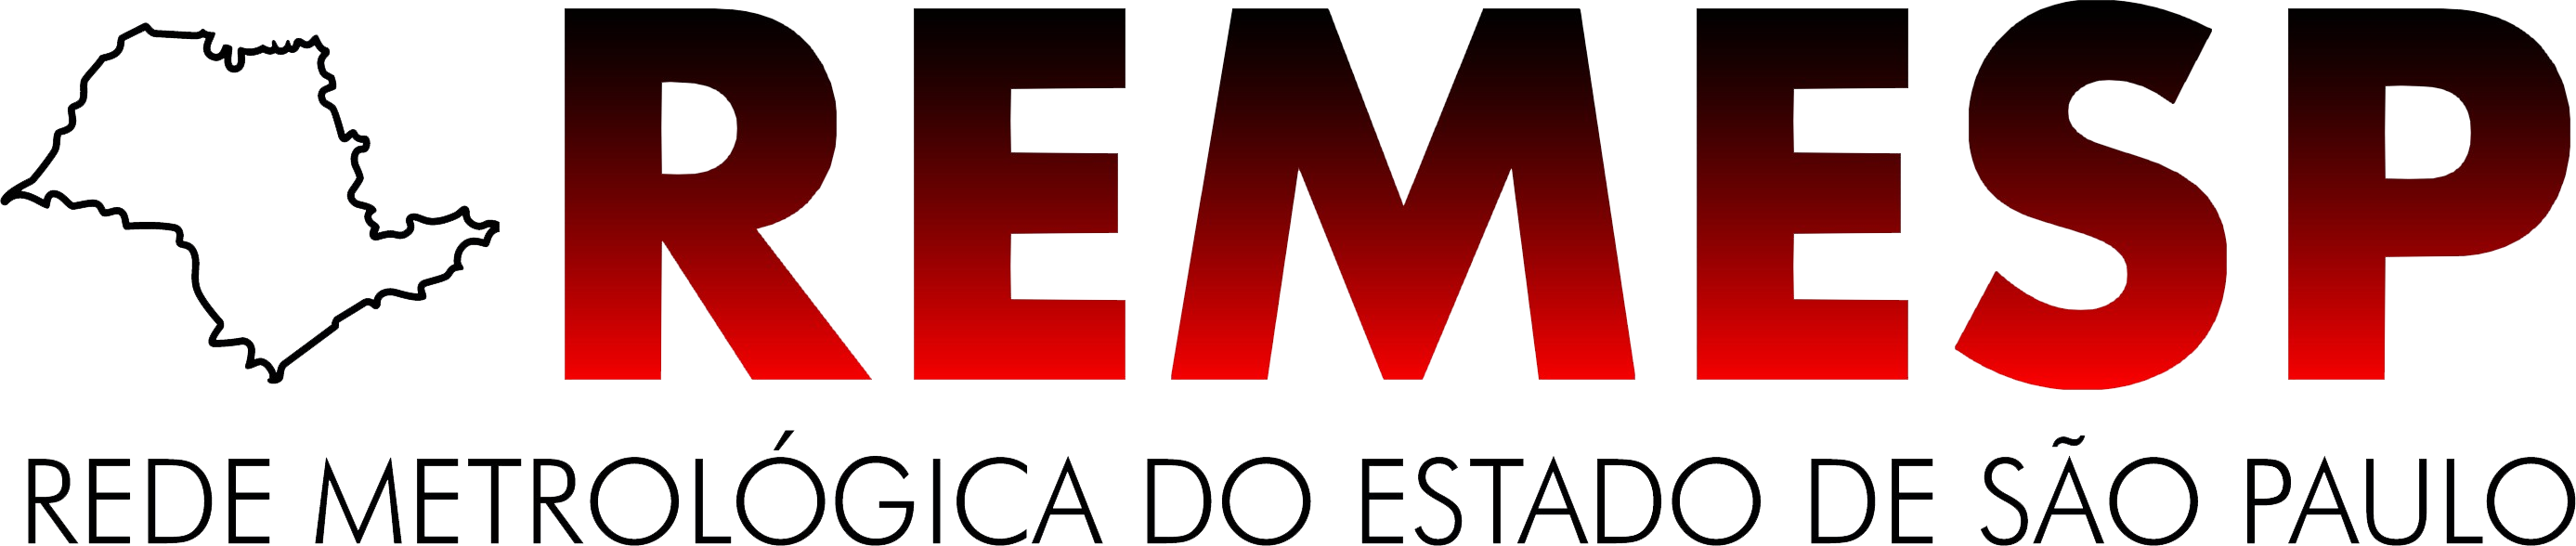 REMESP logo